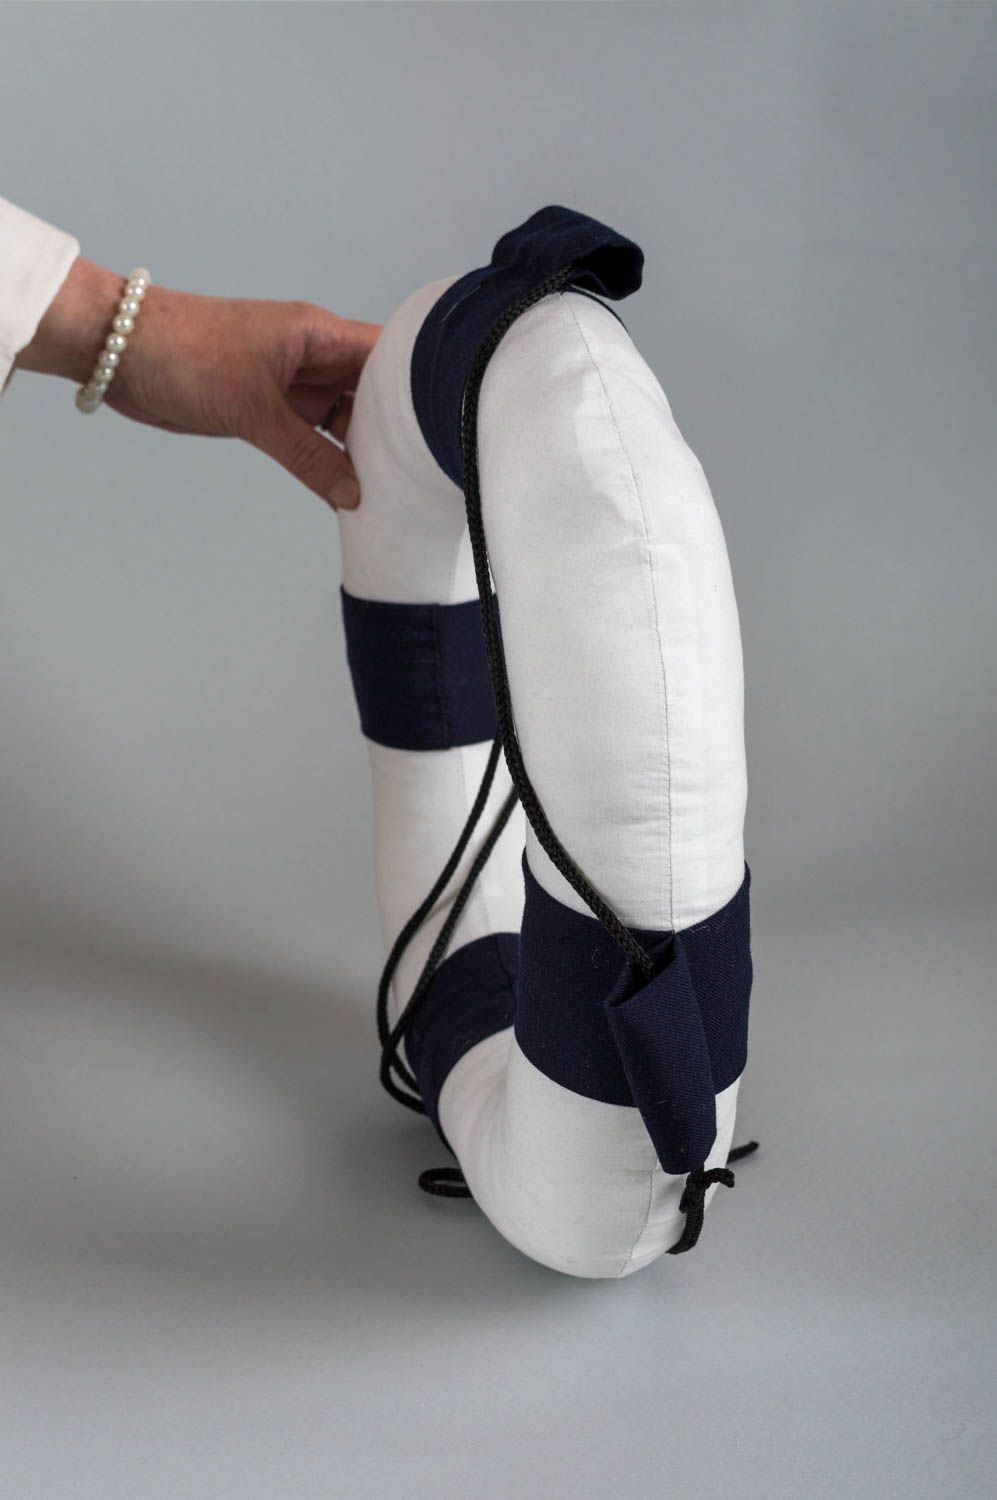 Juguete artesanal almohada de peluche regalo original con forma de salvavidas foto 5